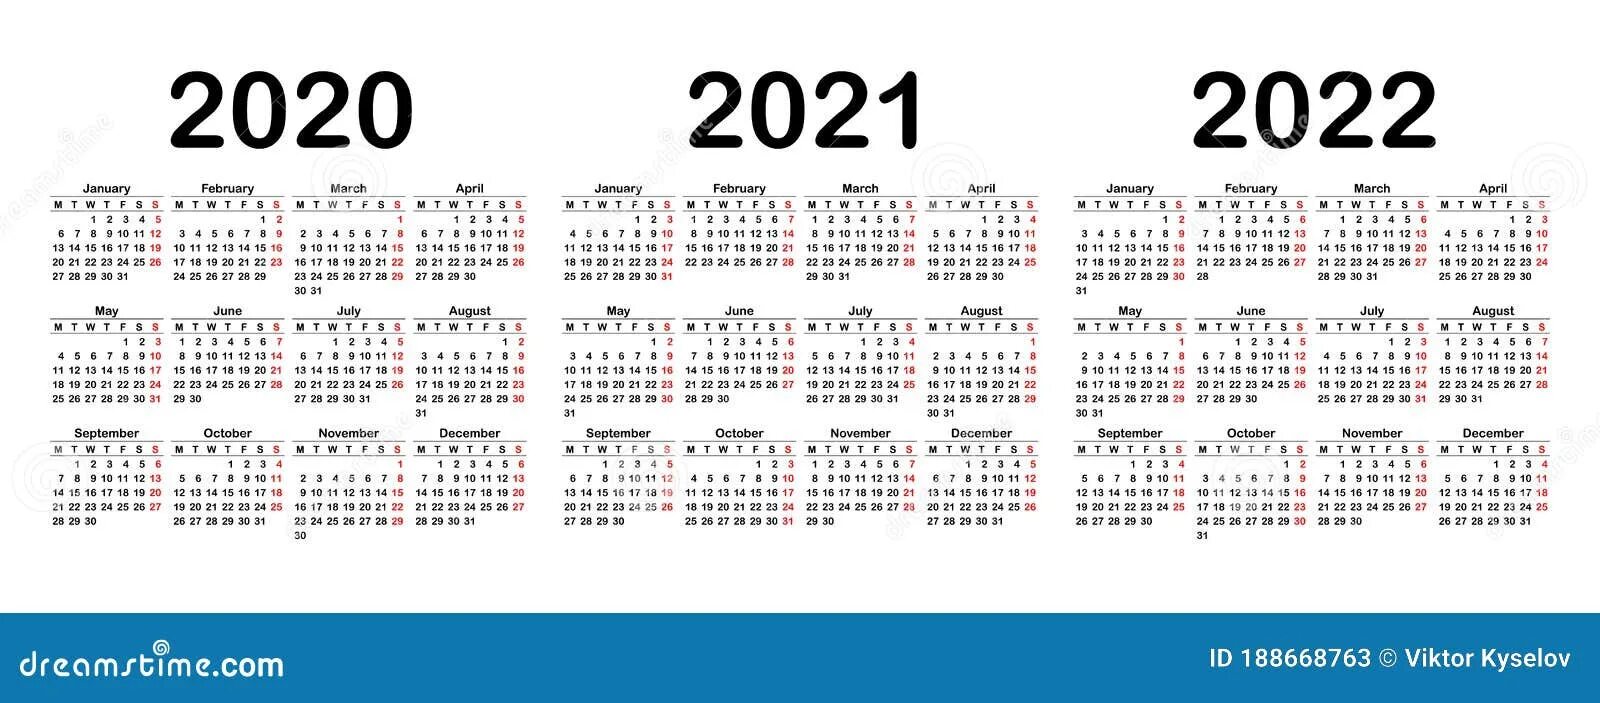 Календарь 2020 2021 2022. Календарь 2021-2022гг. Календарь на 2020 2021 2022 годы. Календарь с неделями 2021-2022.